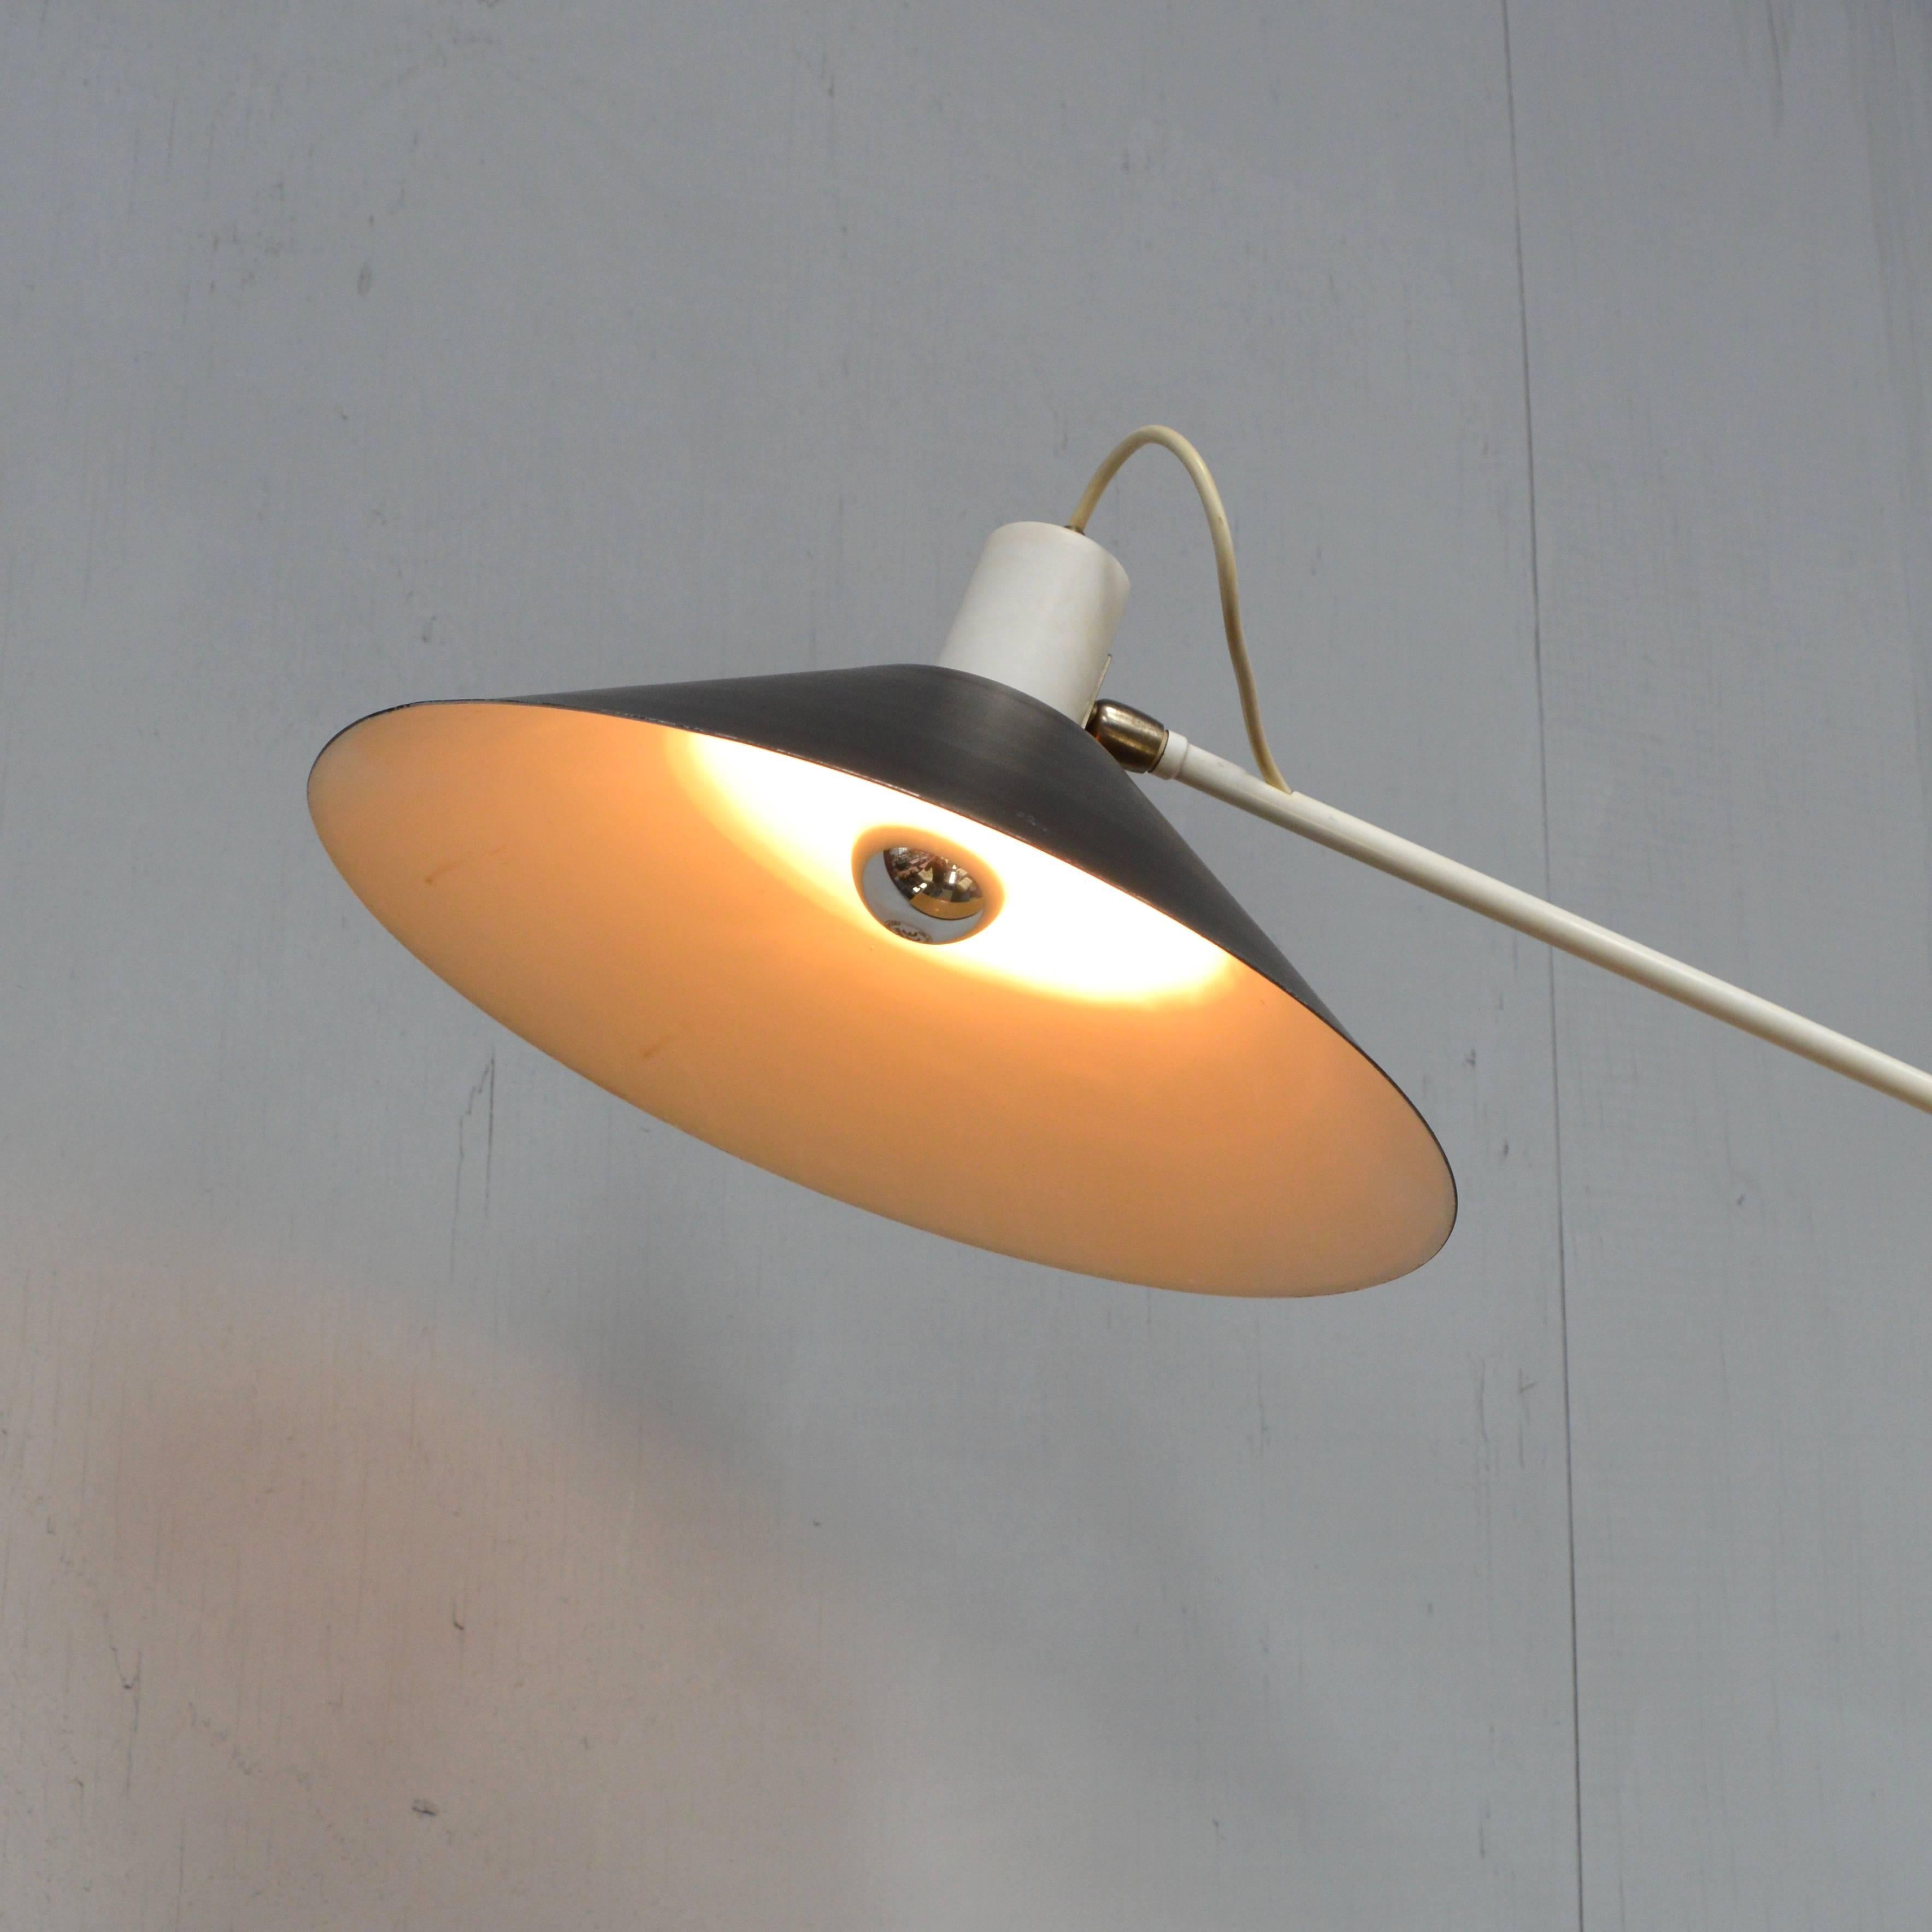 Mid-20th Century J. J. M. Hoogervorst for Anvia Counter Balance Ceiling Lamp, Netherlands